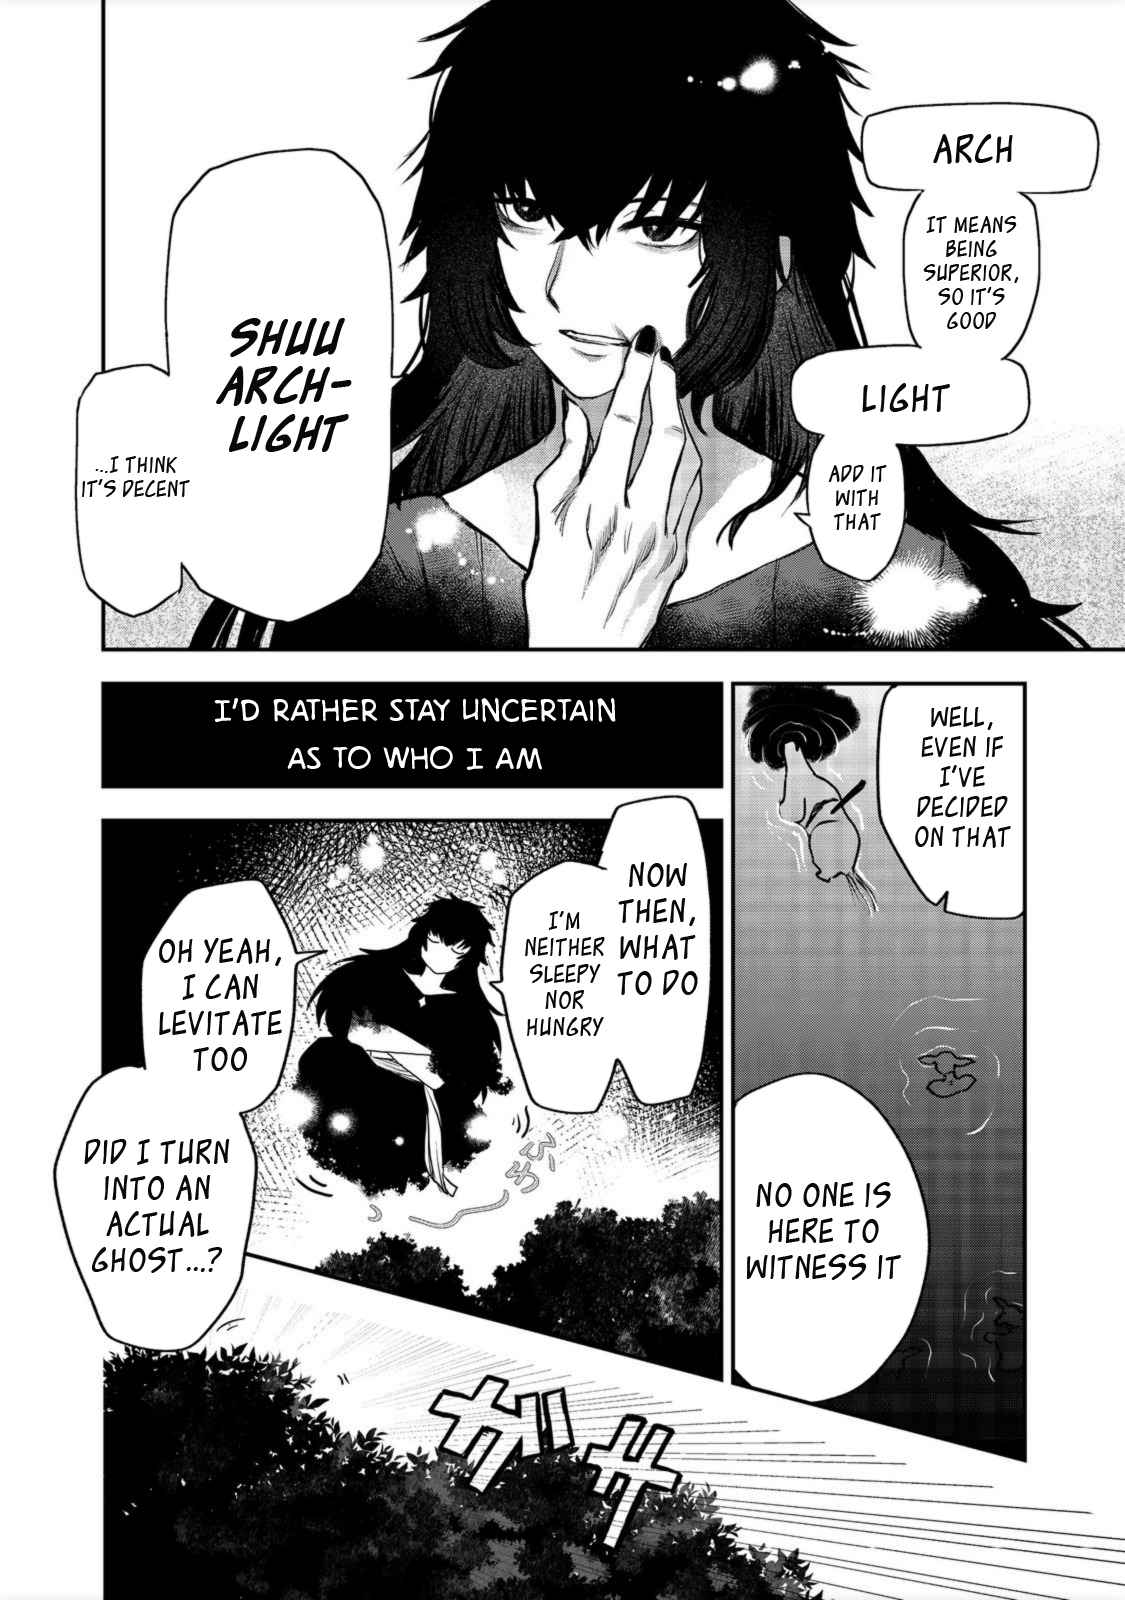 Meiou-sama ga Tooru no desu yo! (Light Novel) Manga